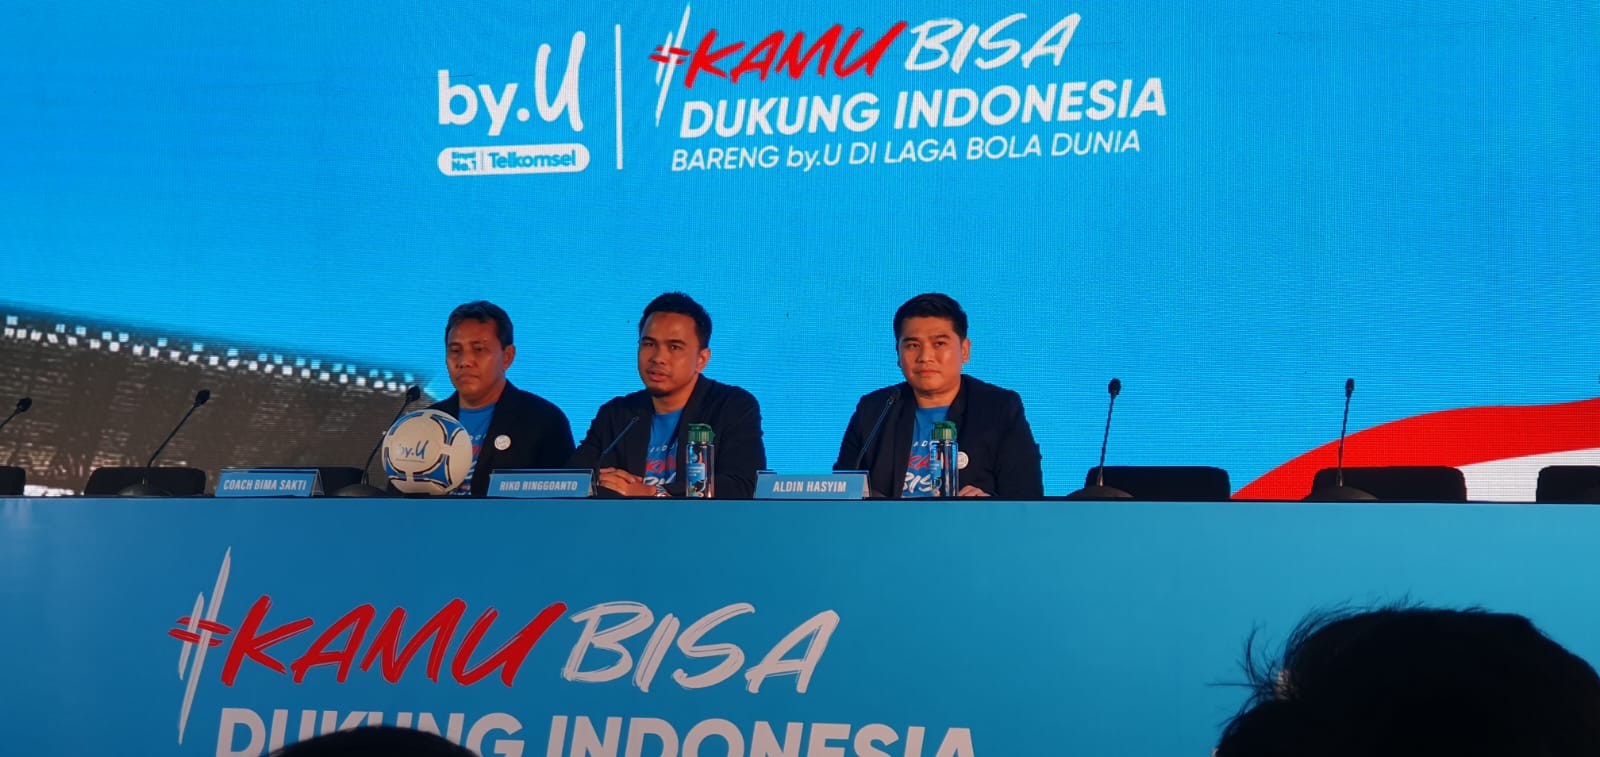 Dukungan By. U Kepada Punggawa Timnas Sepakbola Indonesia U-17 di Ajang Piala Dunia, 1 Gol Free 1GB